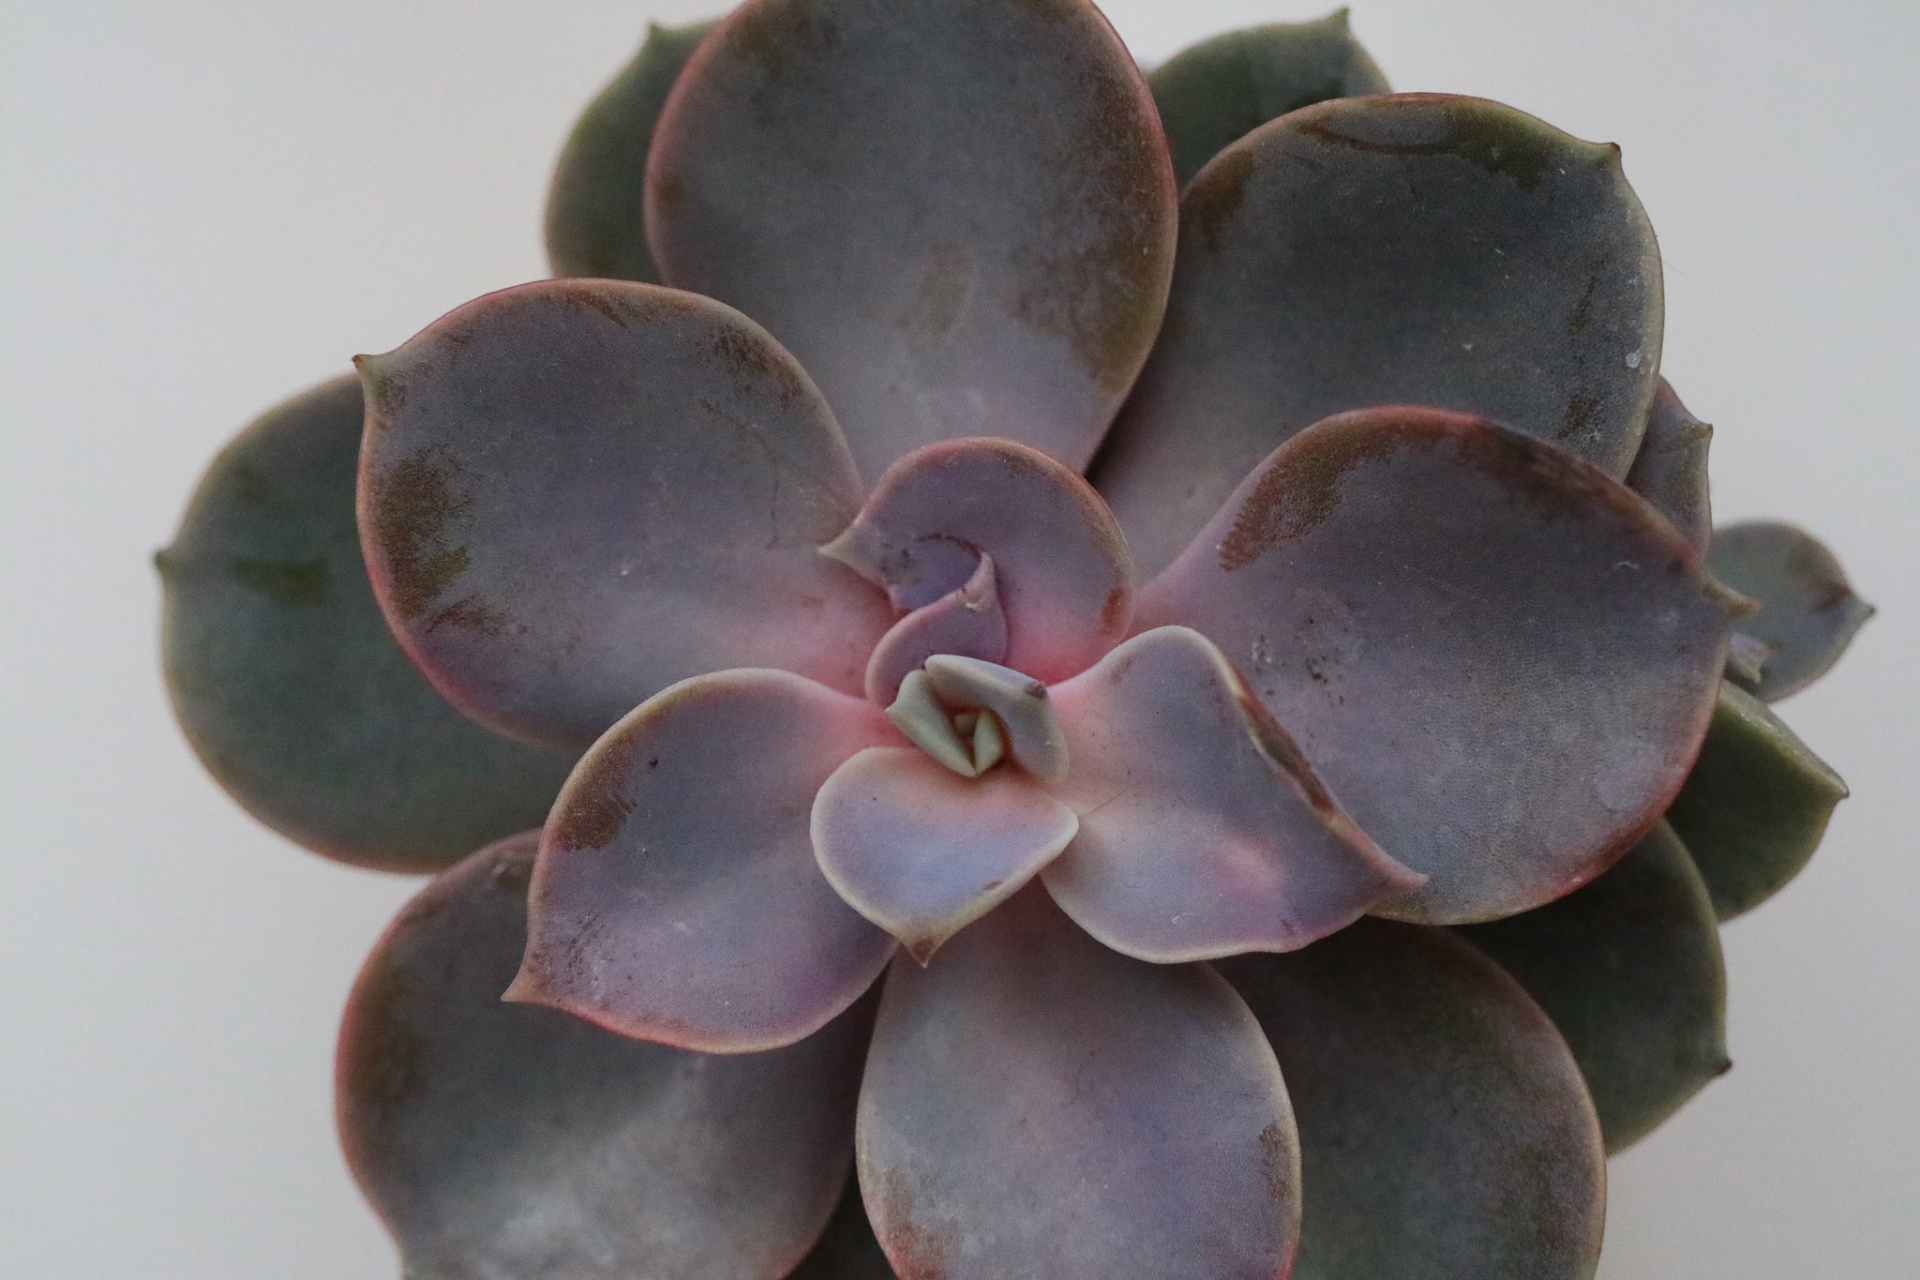 多肉紫珍珠,是一种美丽且受欢迎的多肉植物,它具有迷人的紫色叶片和